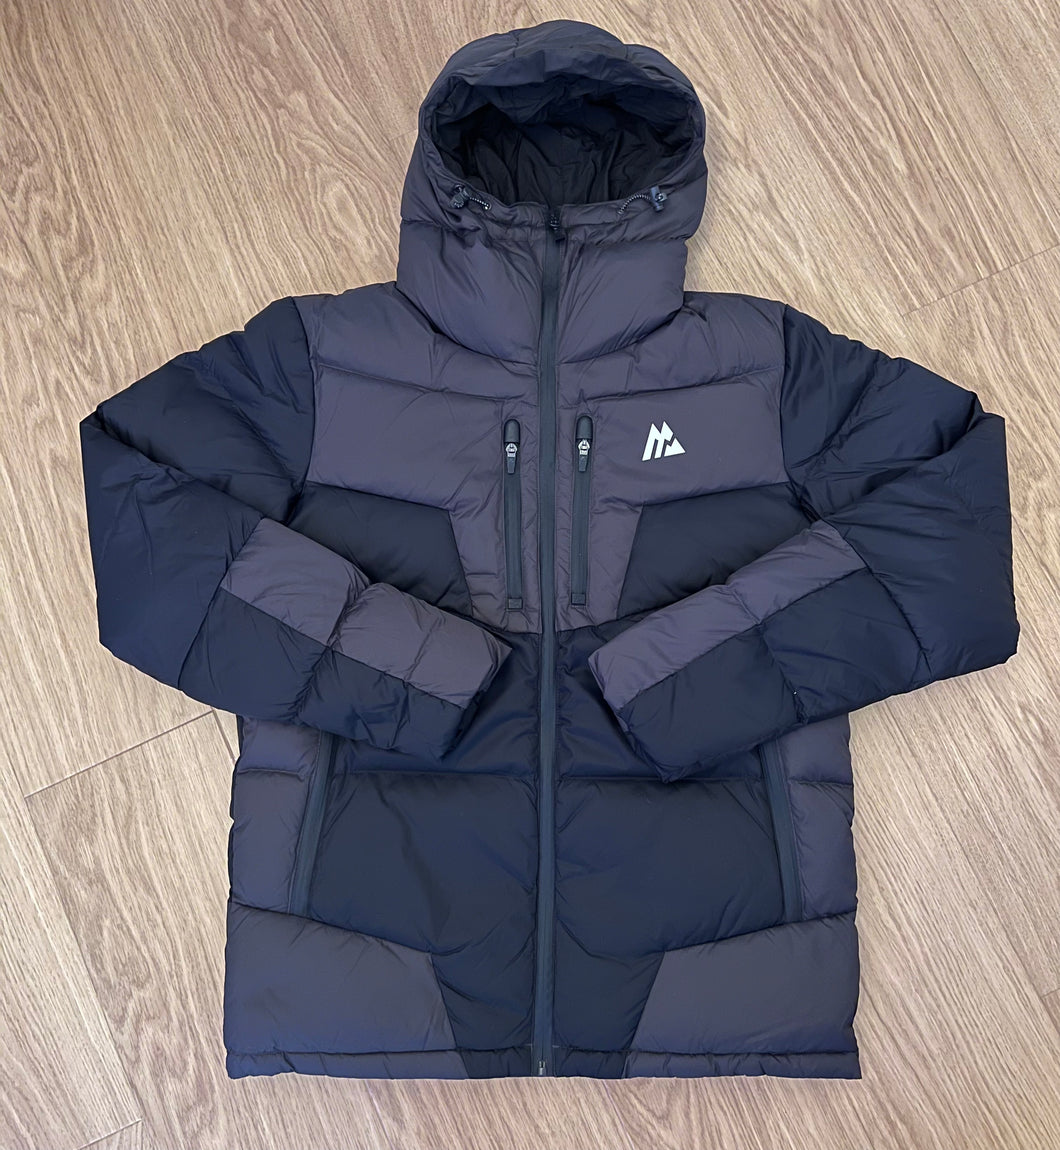 Black/Grey Montirex Peak Puffer Jacket